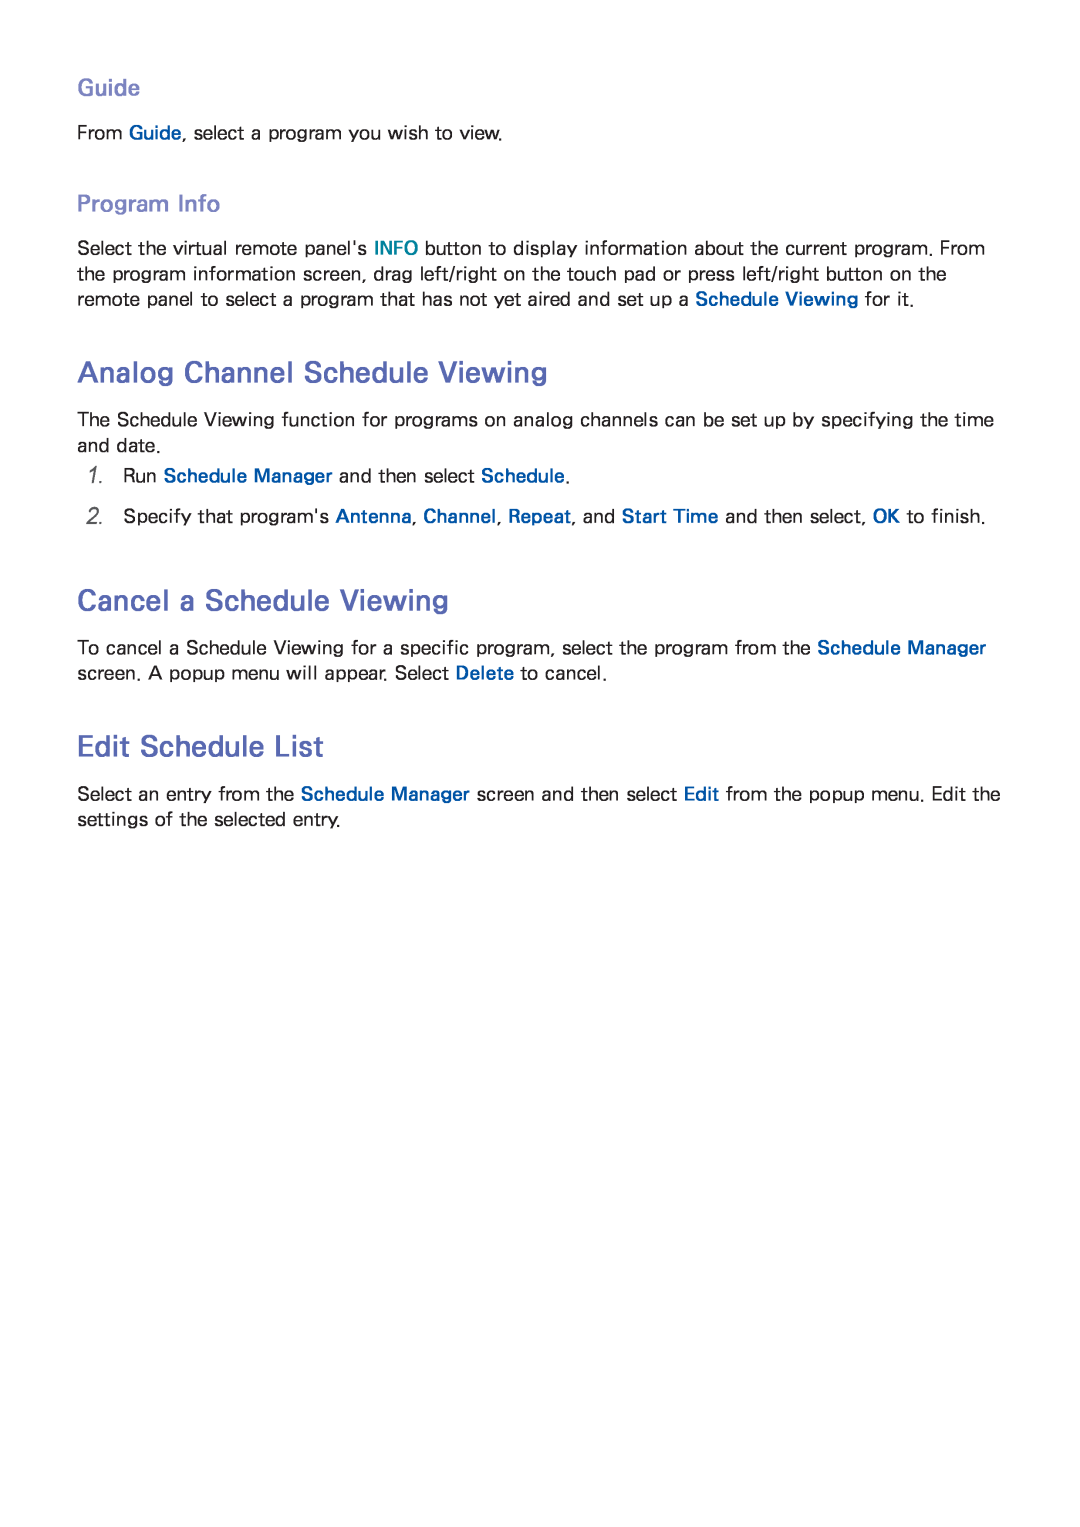 Samsung UN75F8000 Analog Channel Schedule Viewing, Cancel a Schedule Viewing, Edit Schedule List, Guide, Program Info 